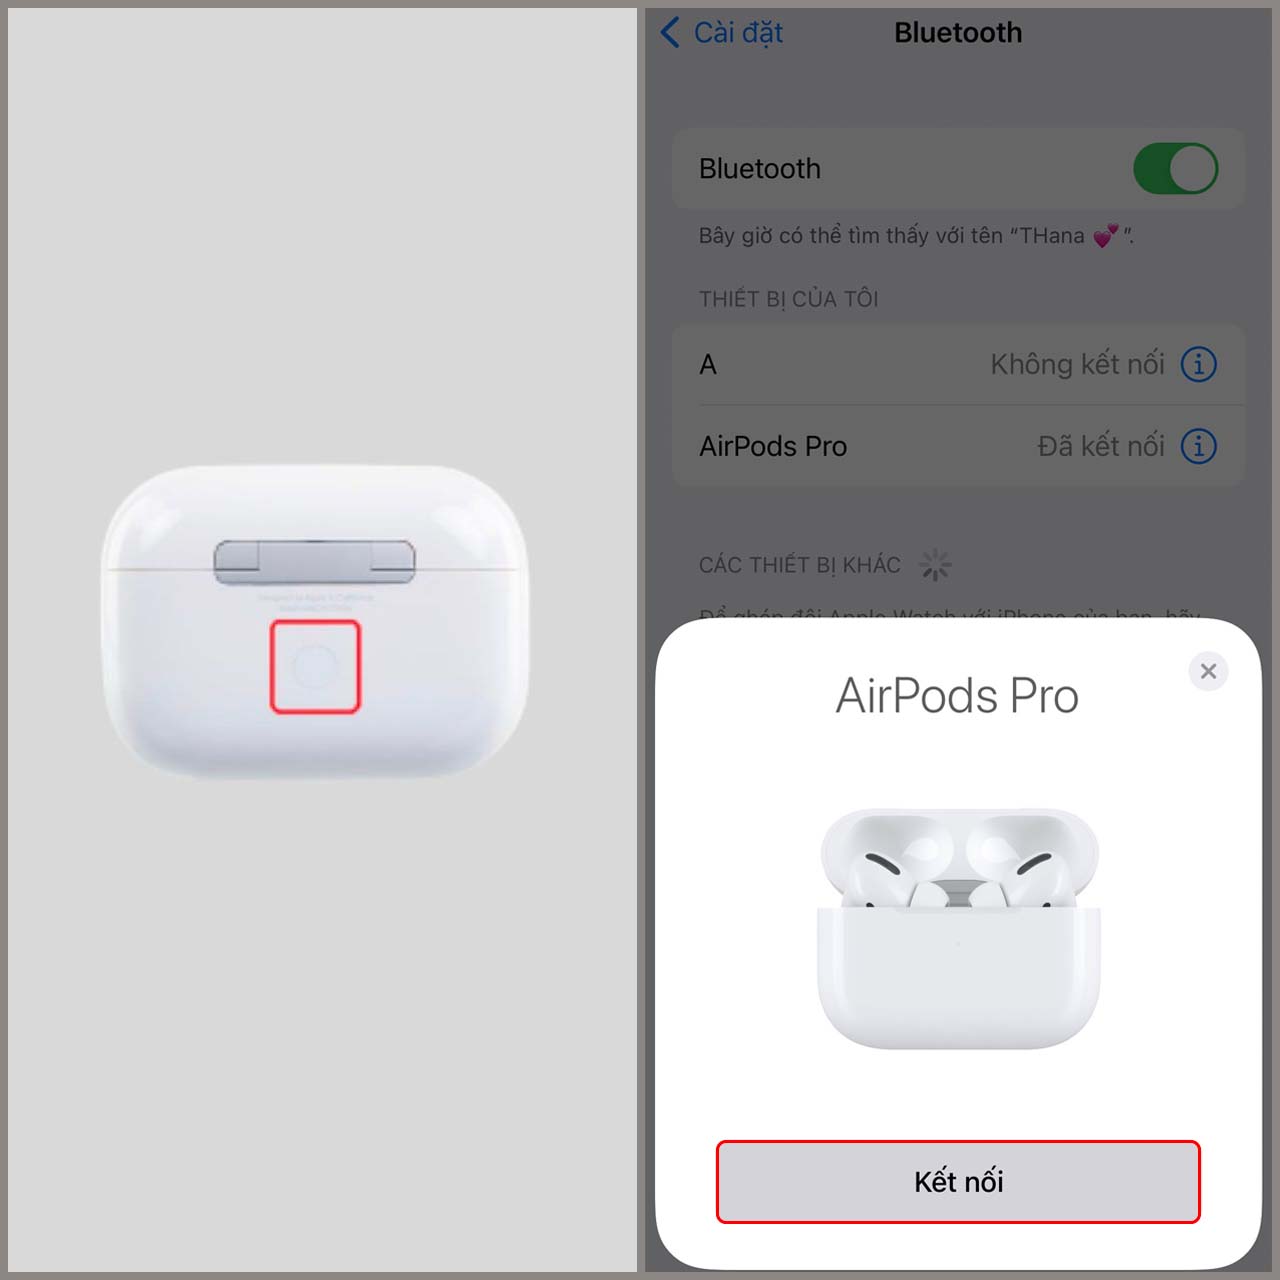 Hướng dẫn kết nối AirPods Pro